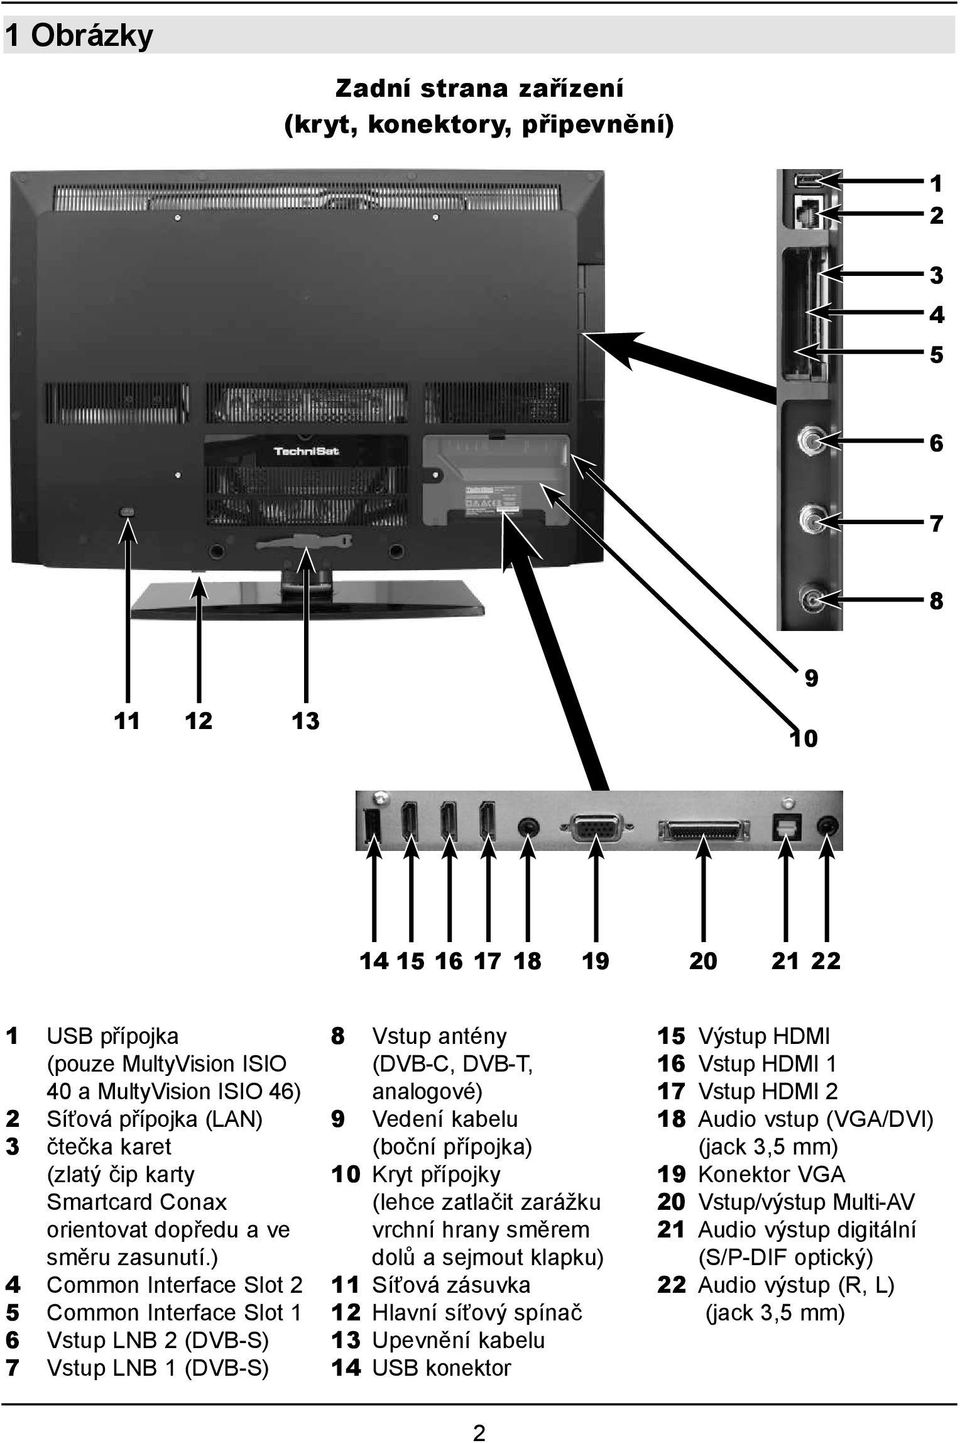 ) 4 Common Interface Slot 2 5 Common Interface Slot 1 6 Vstup LNB 2 (DVB-S) 7 Vstup LNB 1 (DVB-S) 8 Vstup antény (DVB-C, DVB-T, analogové) 9 Vedení kabelu (boční přípojka) 10 Kryt přípojky (lehce